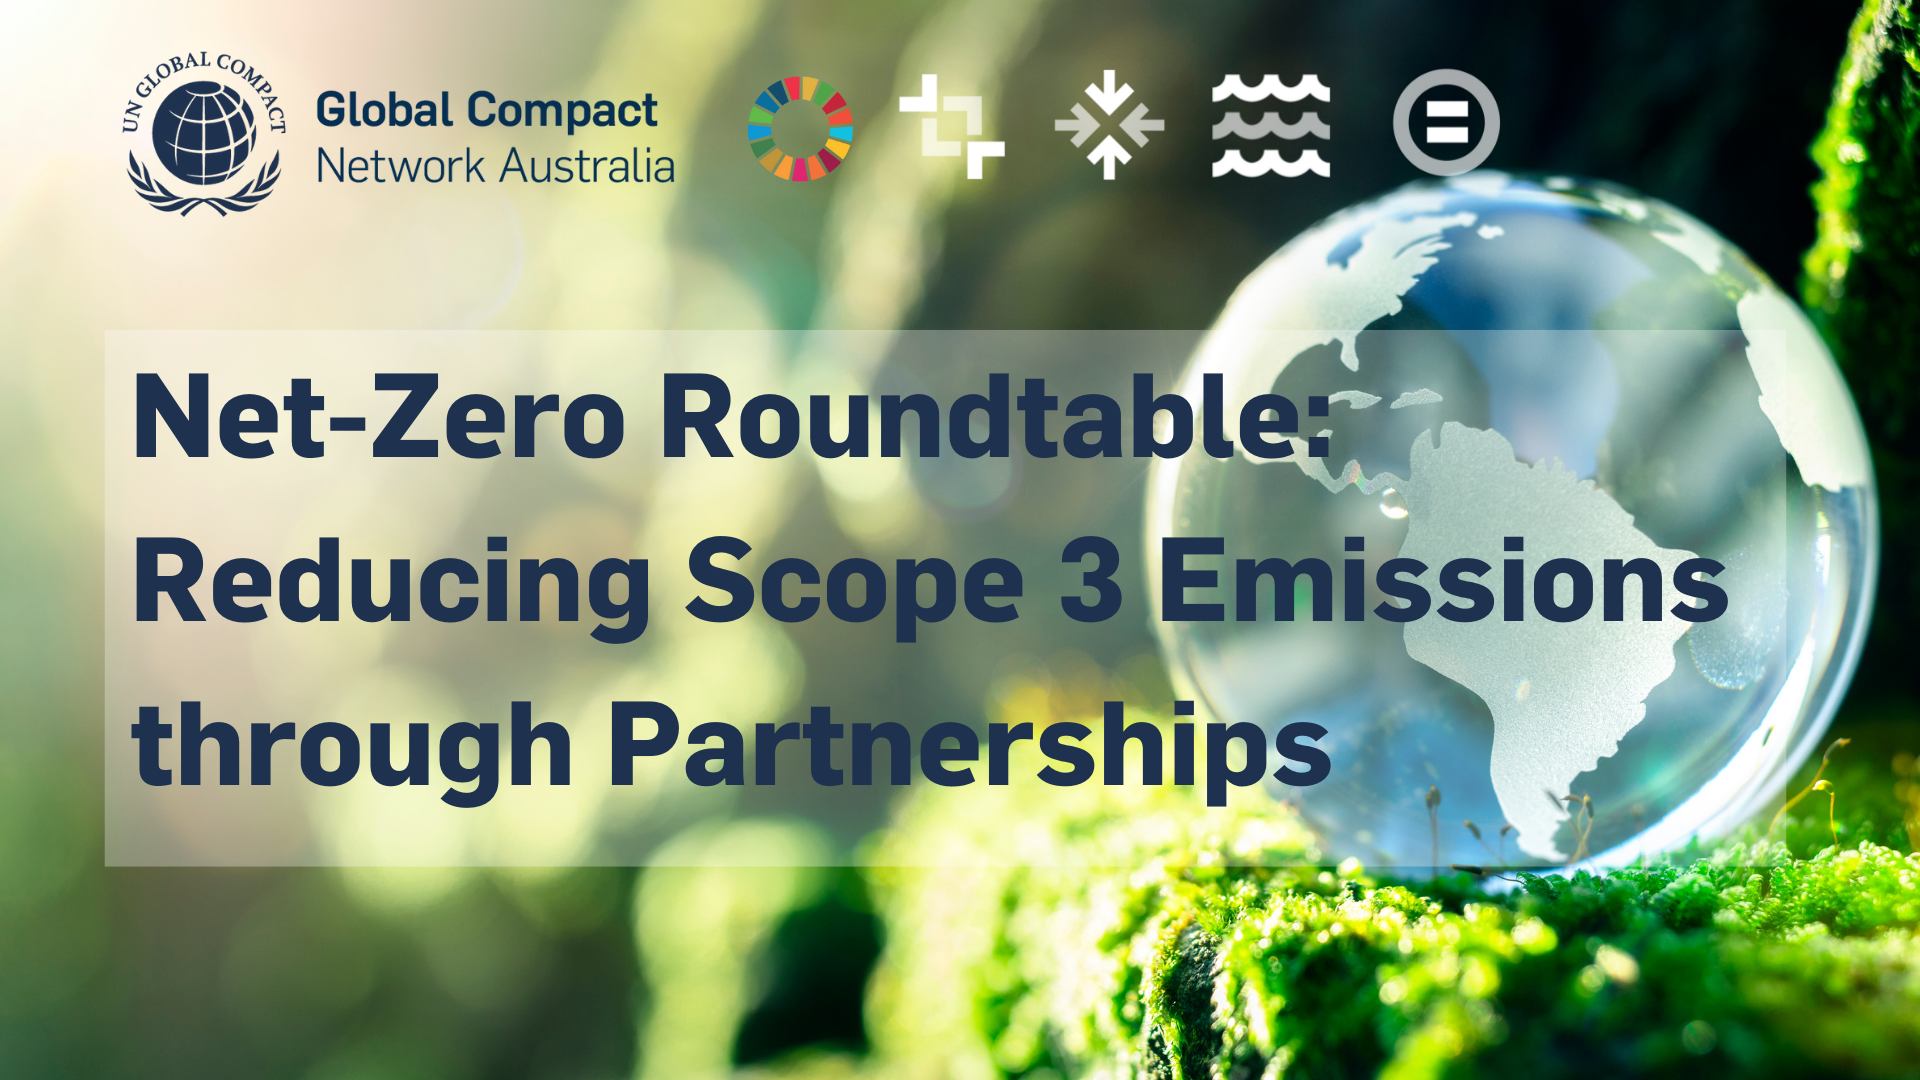 Net-Zero Roundtable: Reducing Scope 3 Emissions through Partnerships